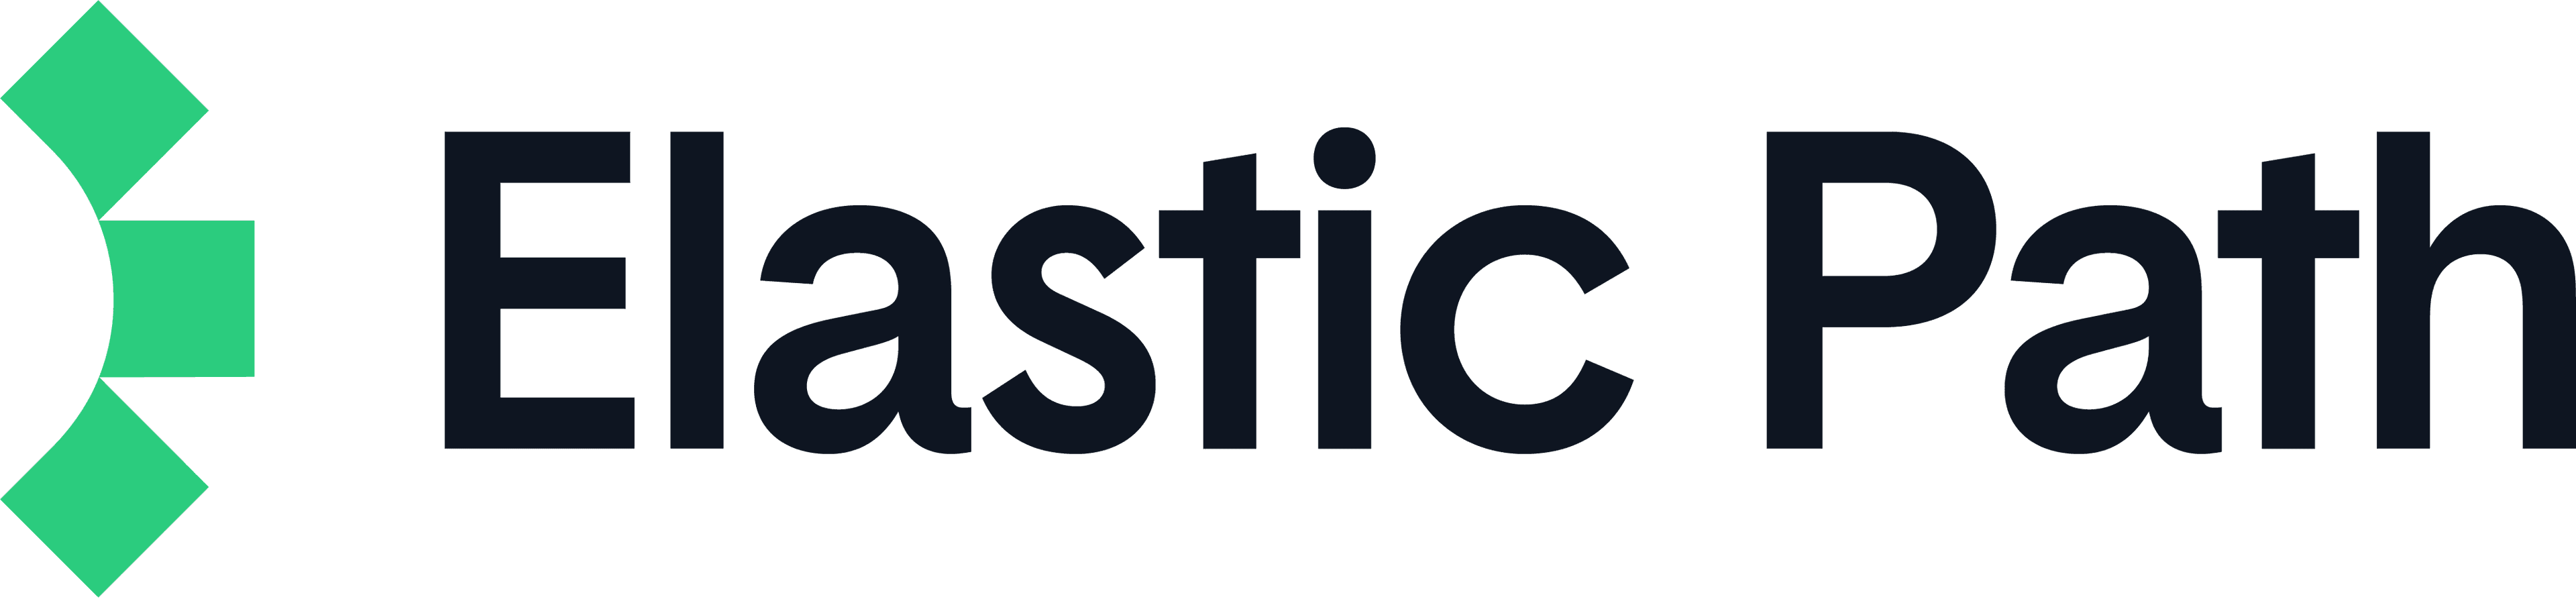 elasticpath logo